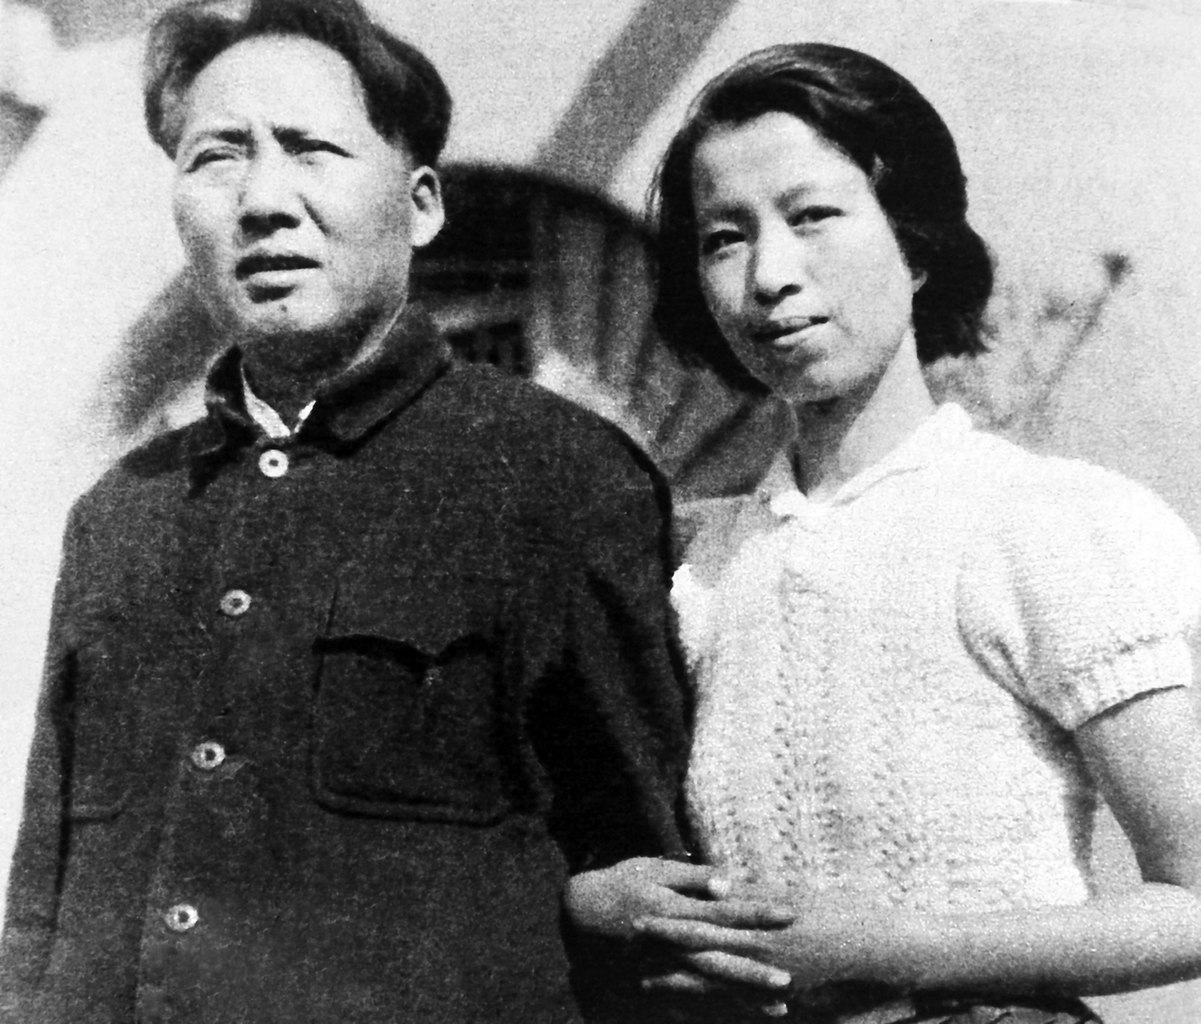 File:Young Jiang Qing with Mao in Yan'an.jpg - Wikimedia Commons